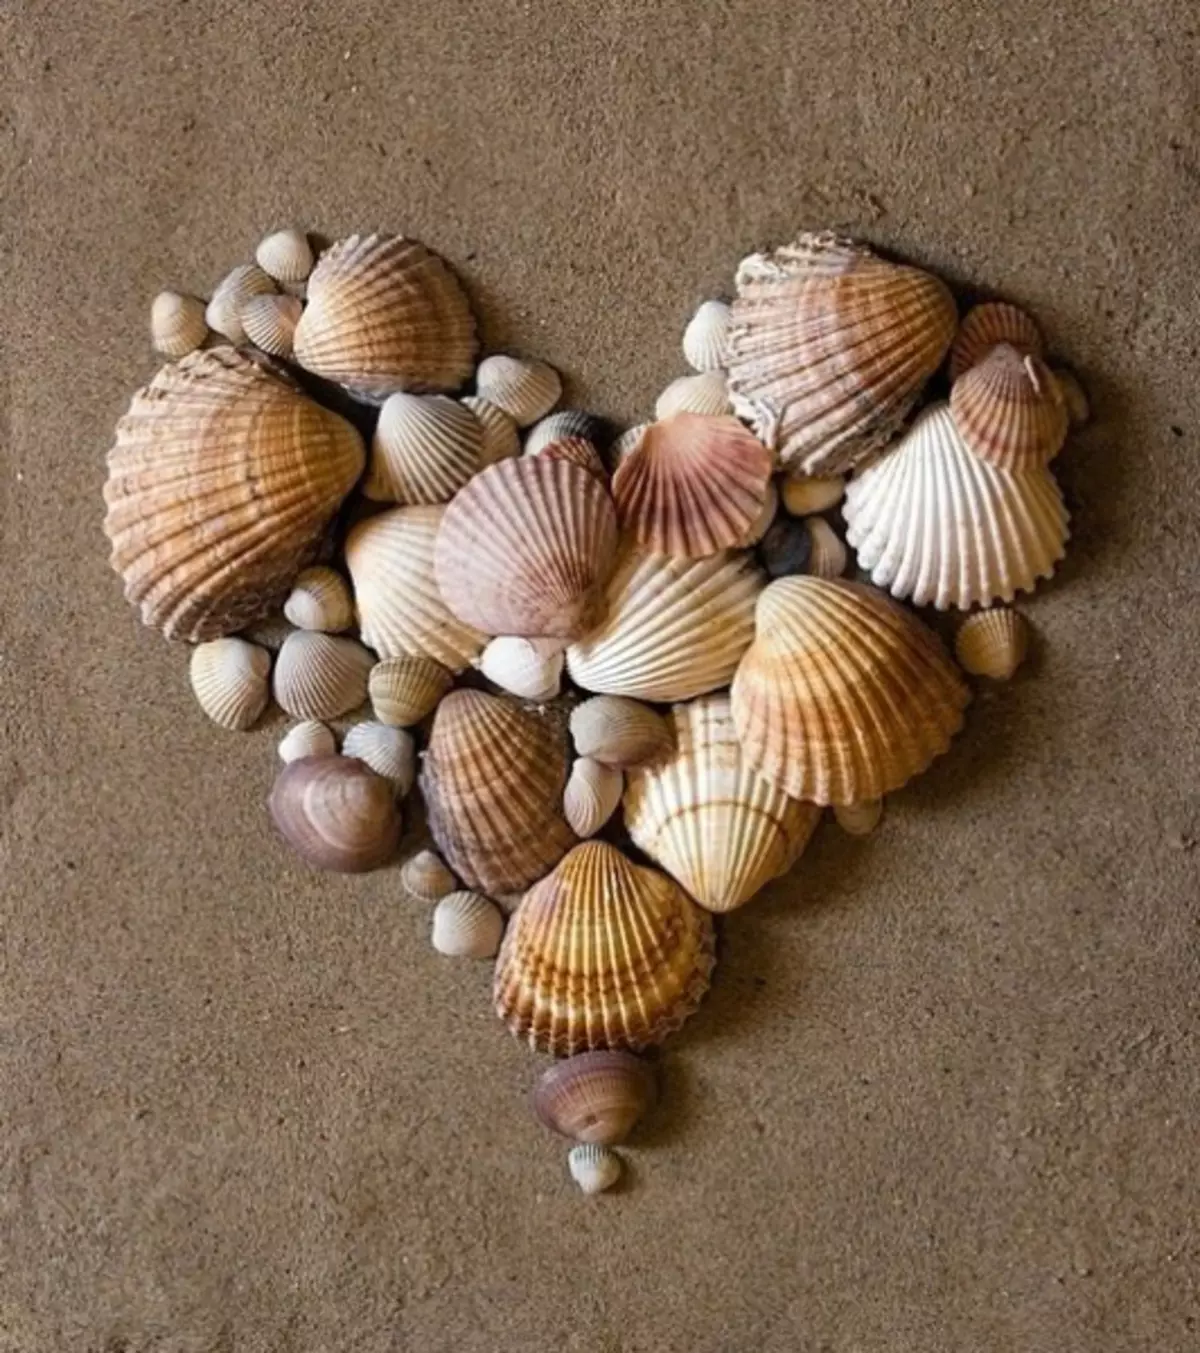 តុបតែងផ្ទះល្វែងមួយ: សិប្បកម្មពី Seashells ដែលមានដៃរបស់ពួកគេផ្ទាល់ (រូបថត 45)